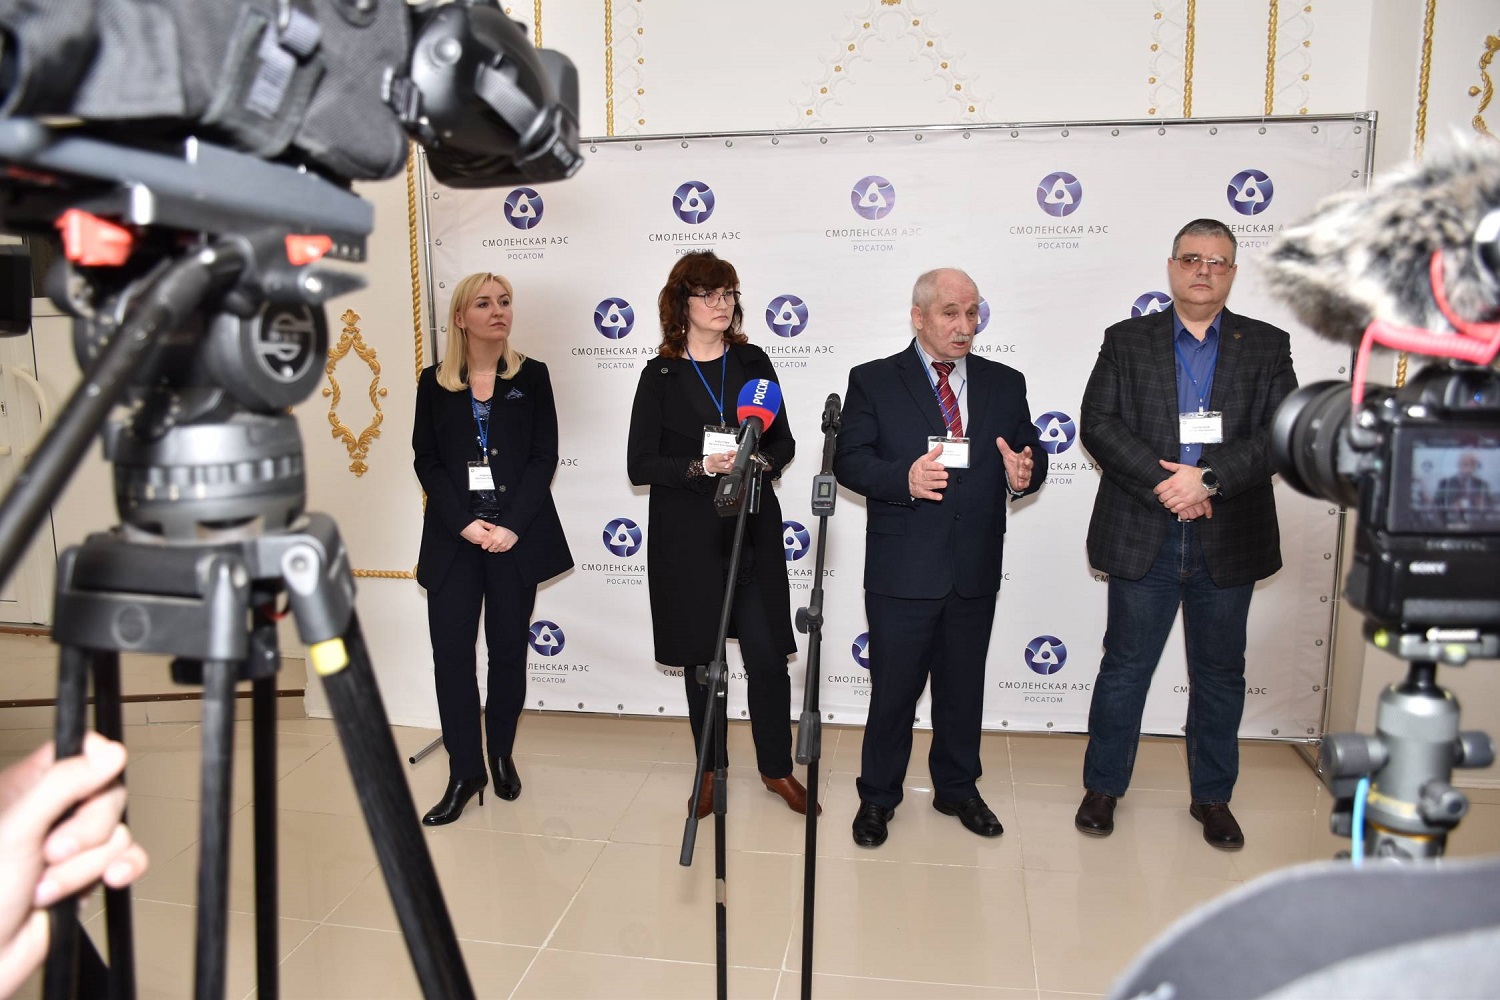 Общественность Смоленской области поддержала производство изотопа кобальта-60 на Смоленской АЭС